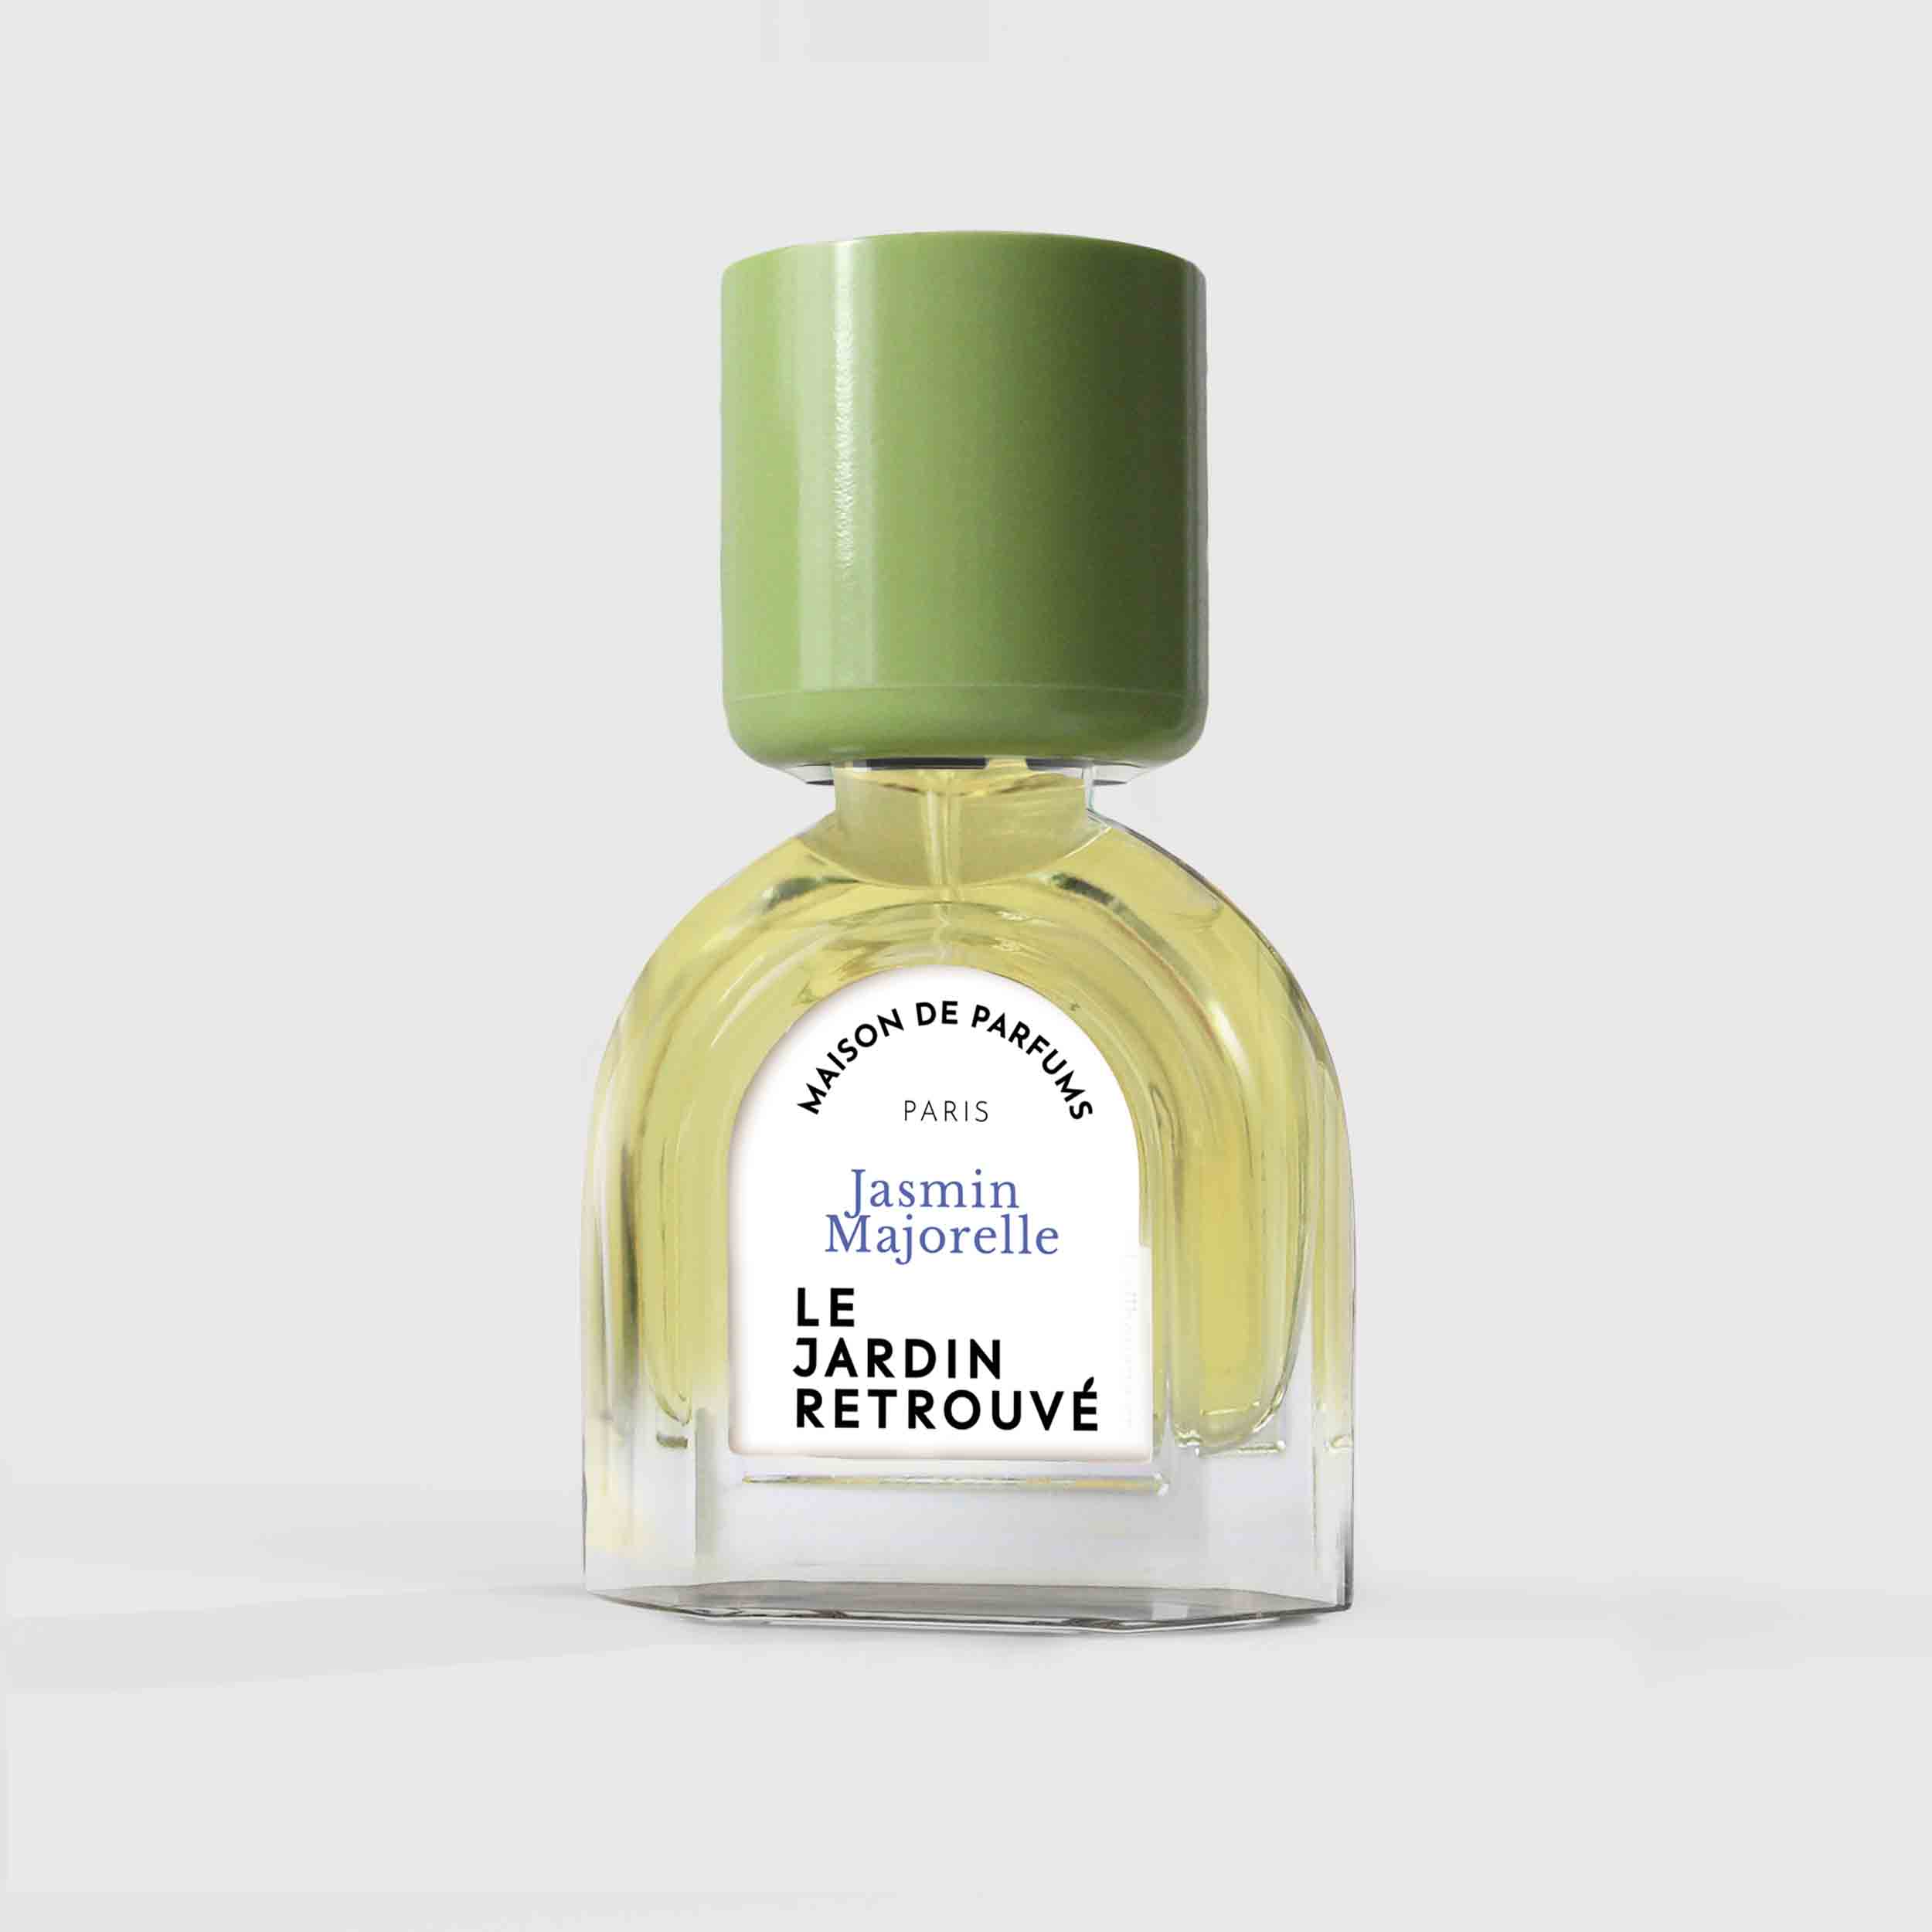 Jasmin Majorelle Eau de Parfum 15ml Bottle by Le Jardin Retrouvé